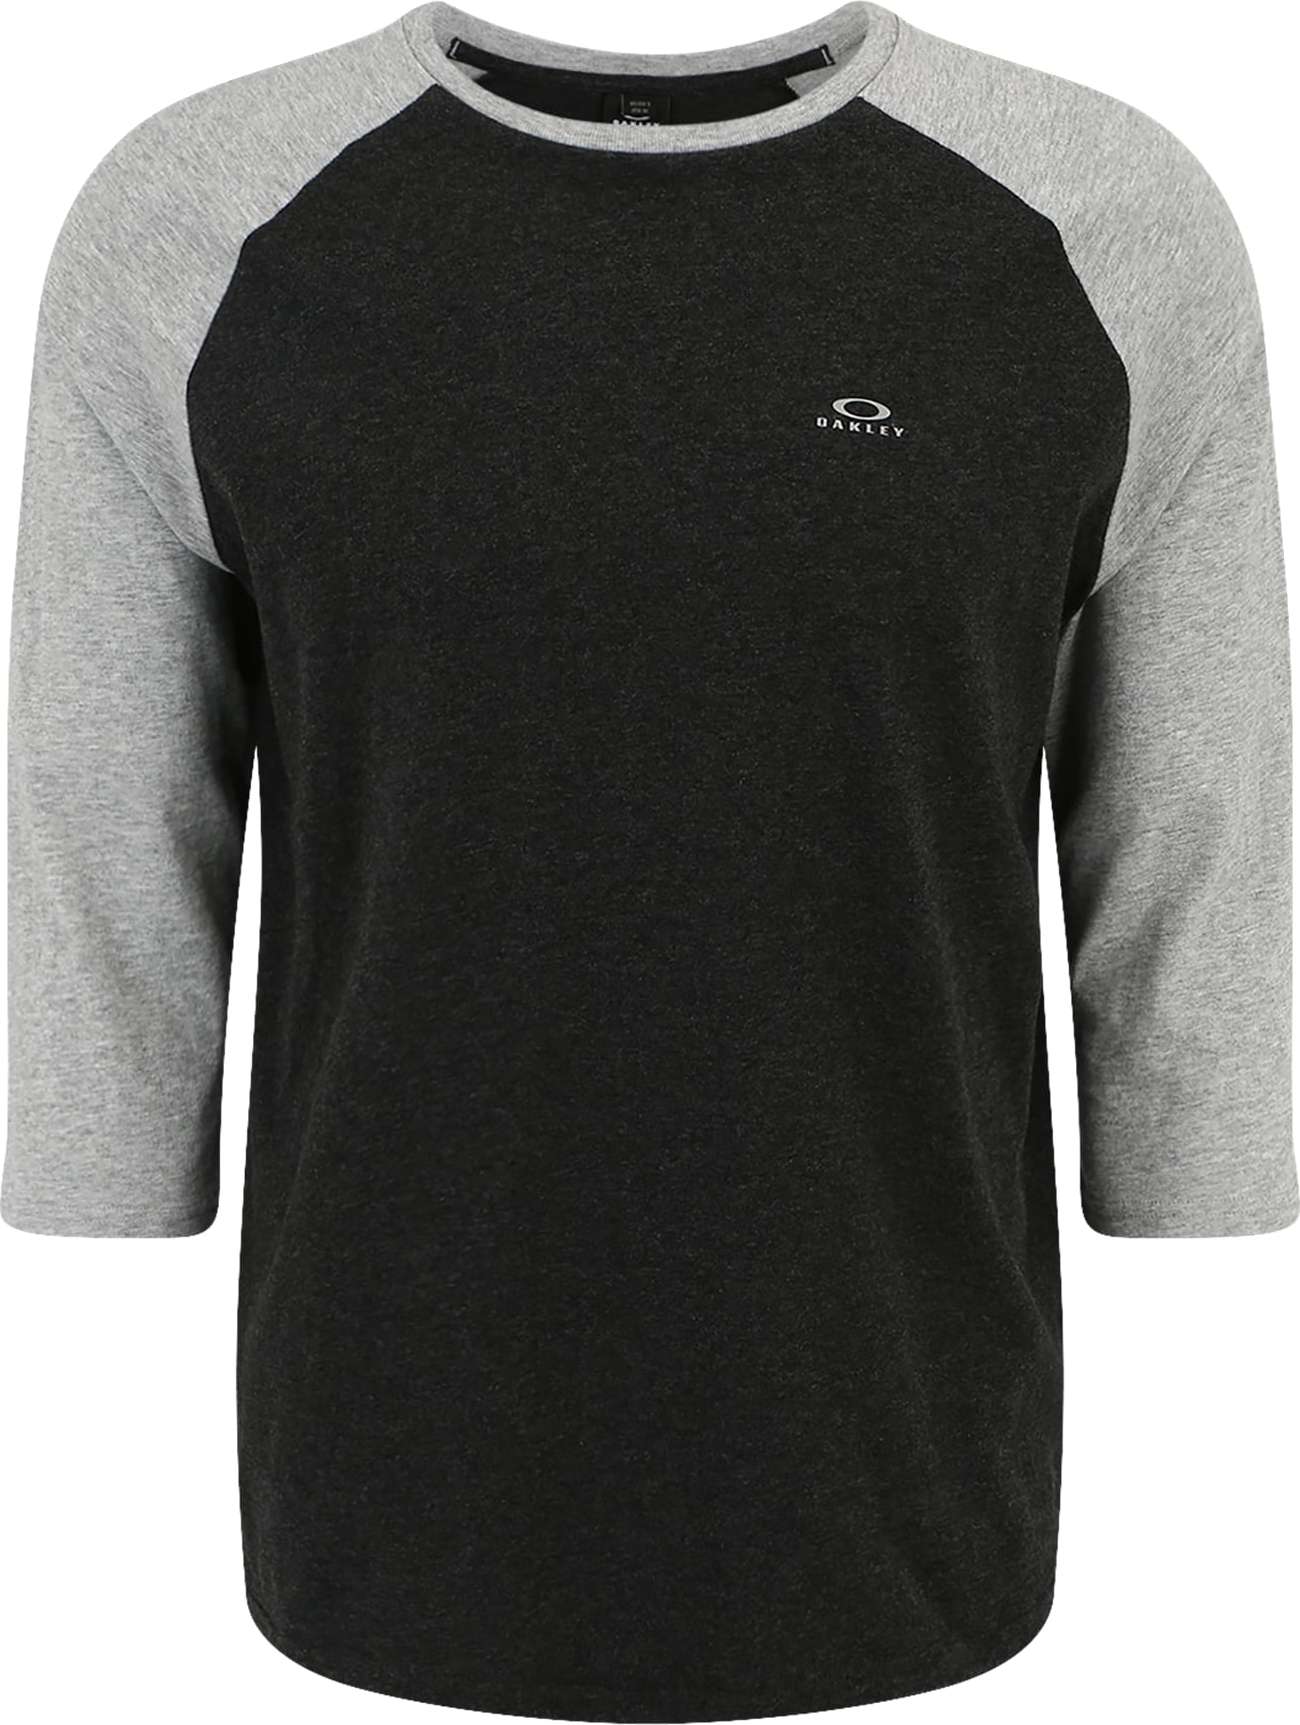 Funkční tričko Oakley antracitová / šedý melír